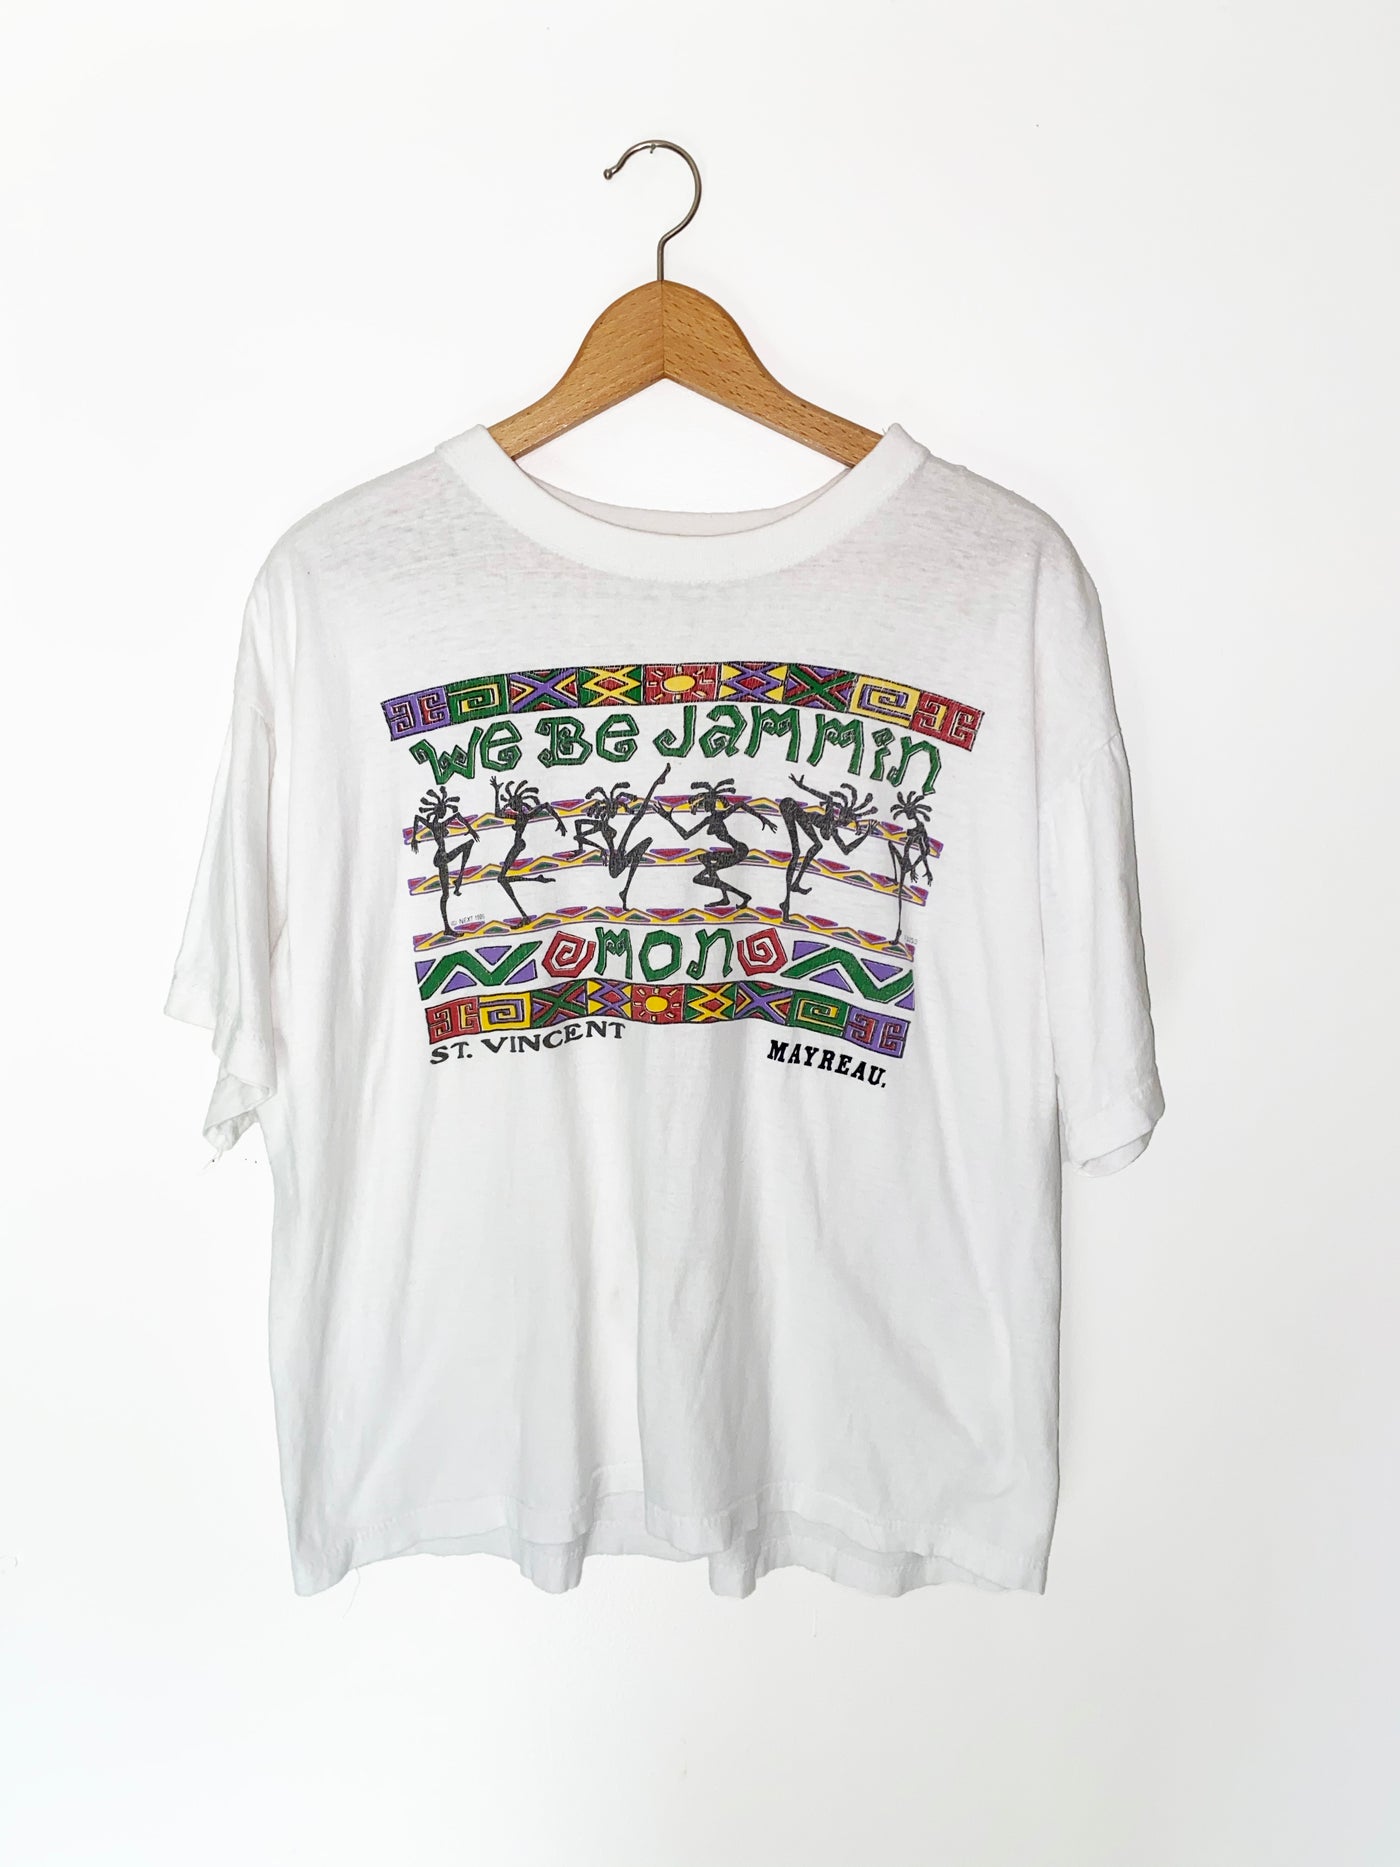 Vintage 1996 “We Be Jammin Mon” St. Vincent T-Shirt